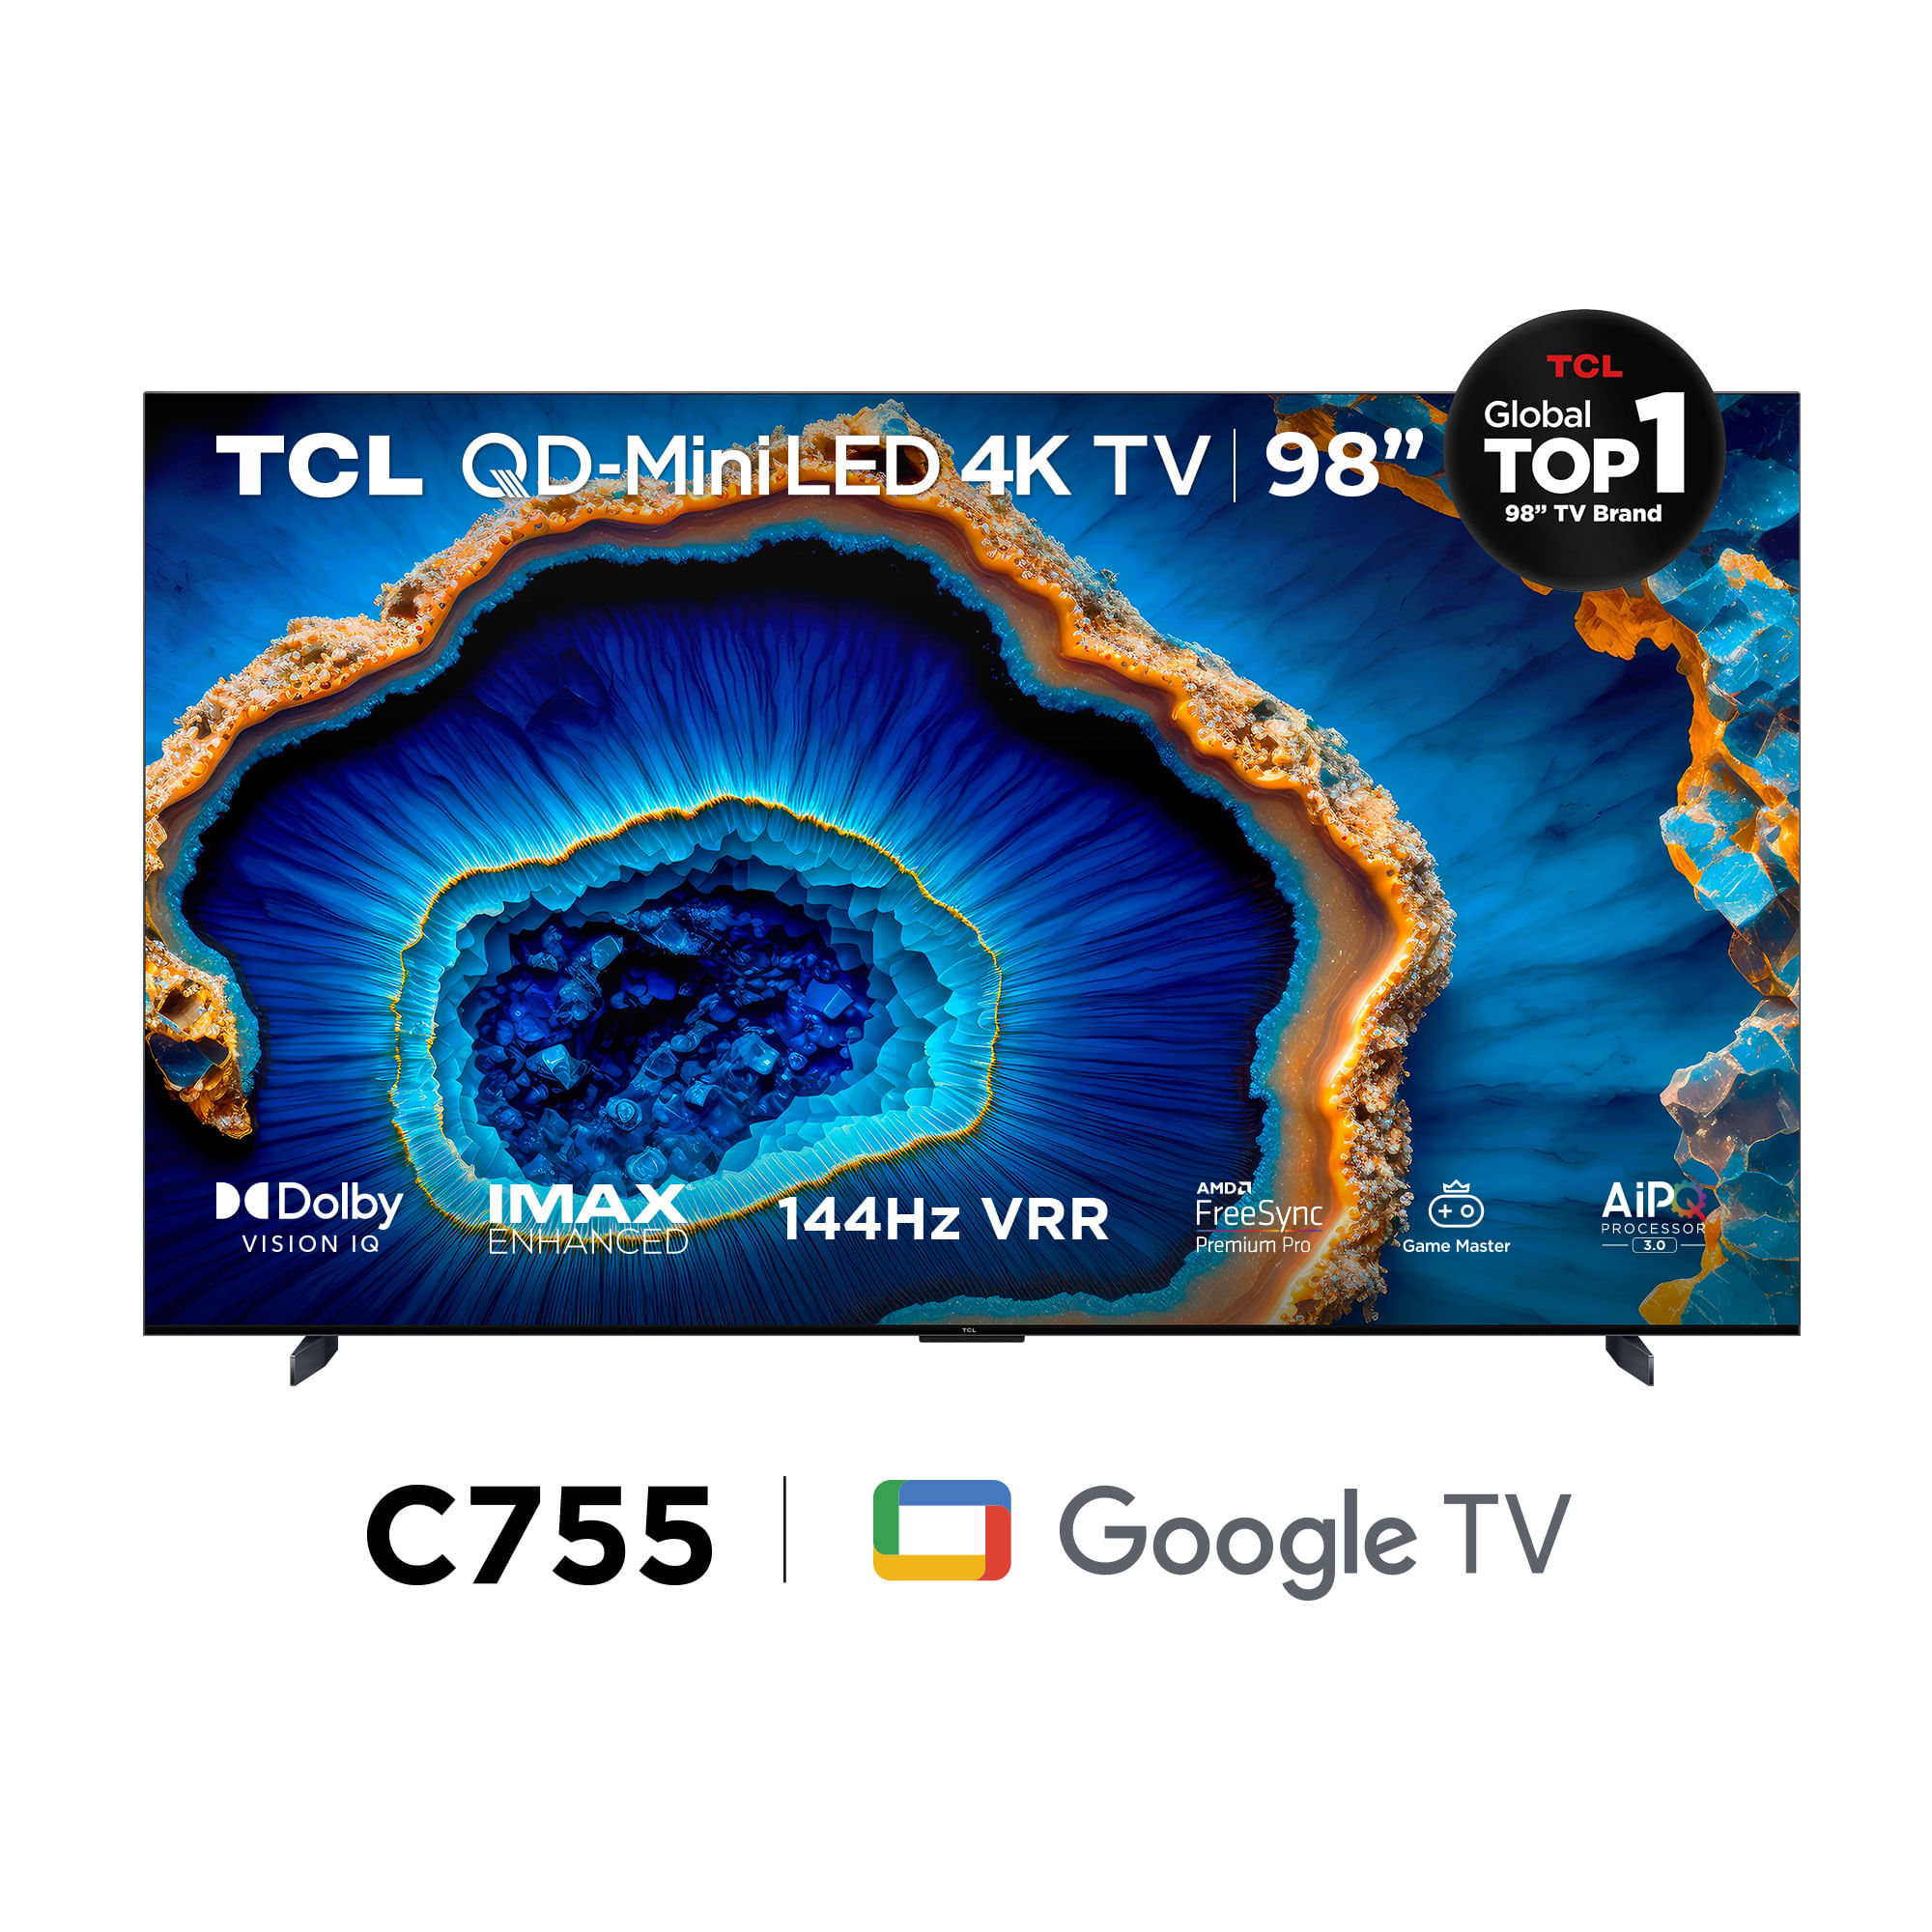 Televisor TCL UHD 4K QD - MINILED 98" Smart Tv 98C735